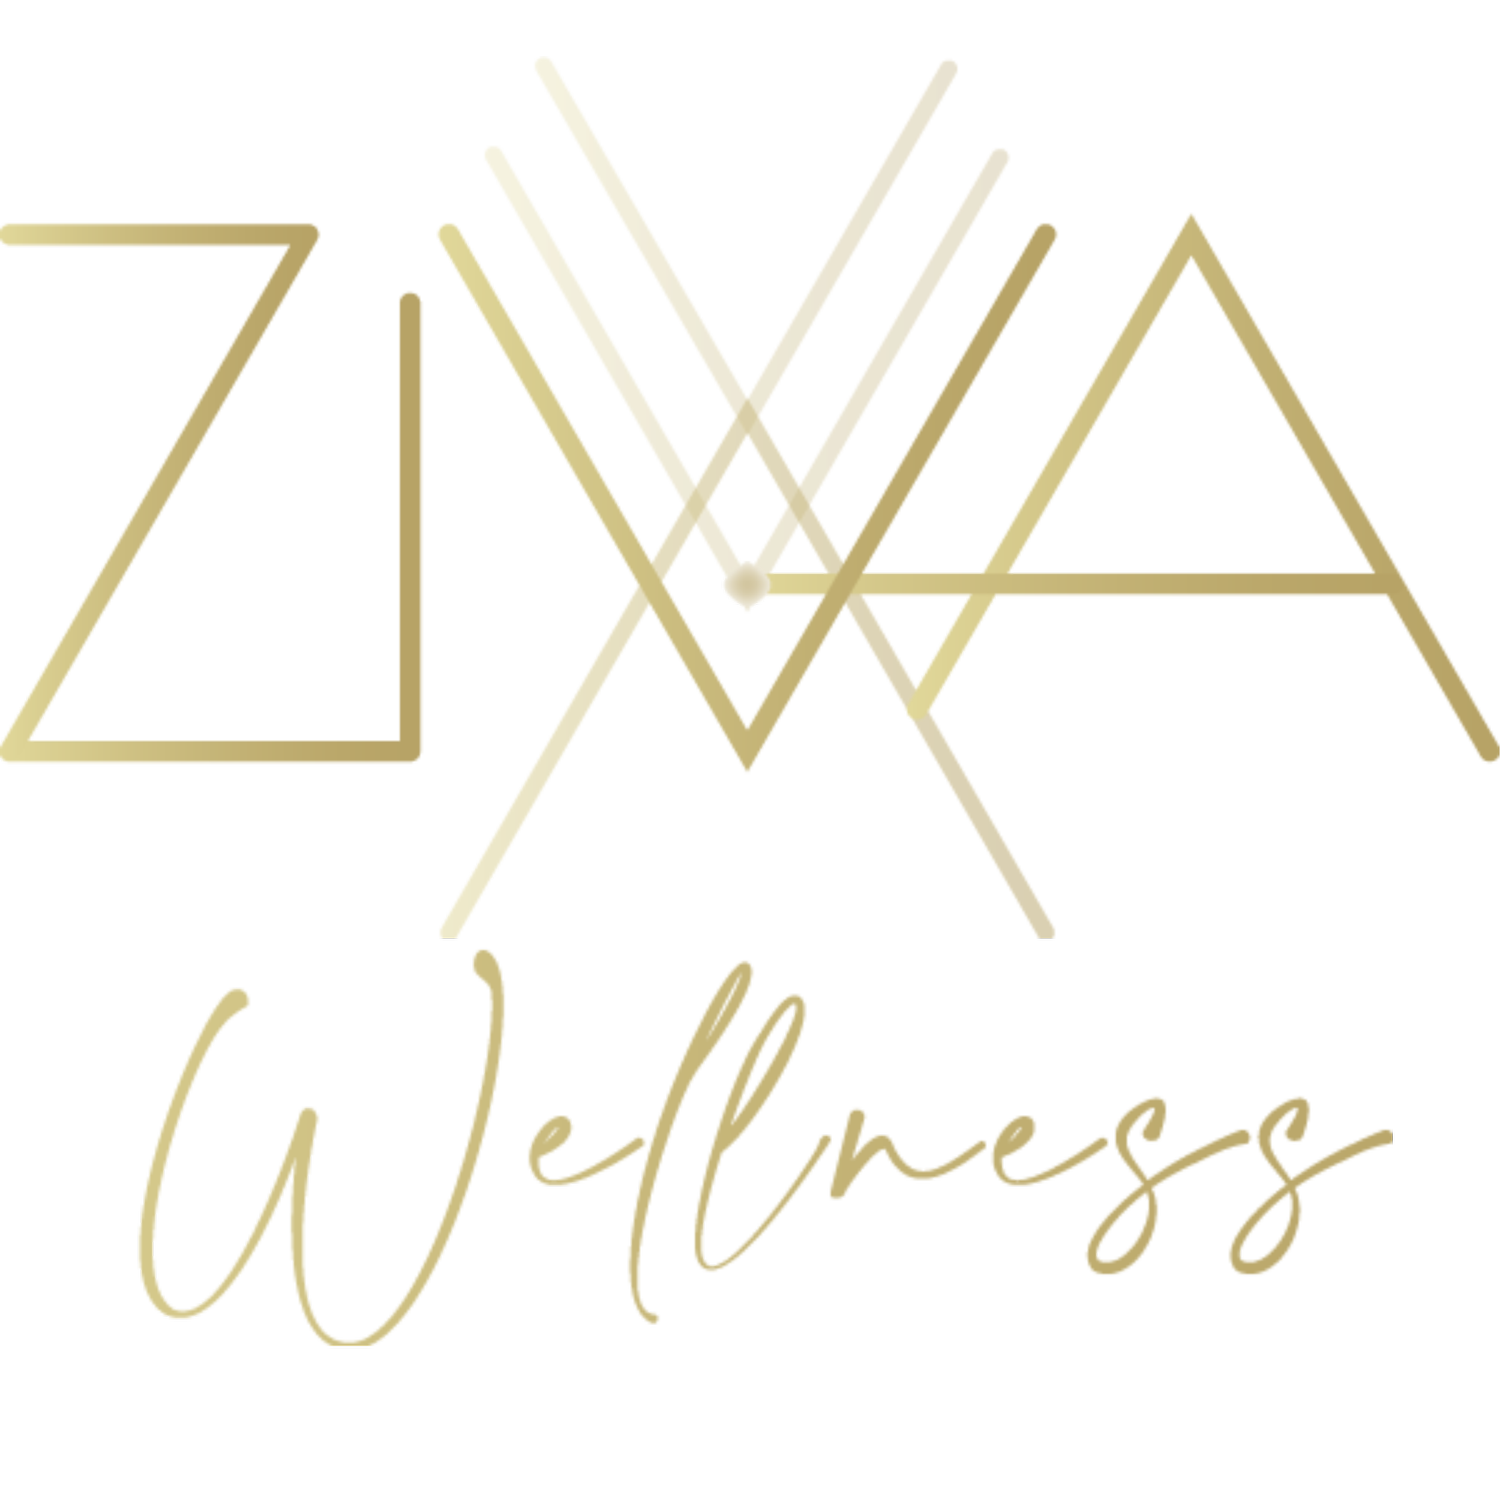 ZIVA Wellness